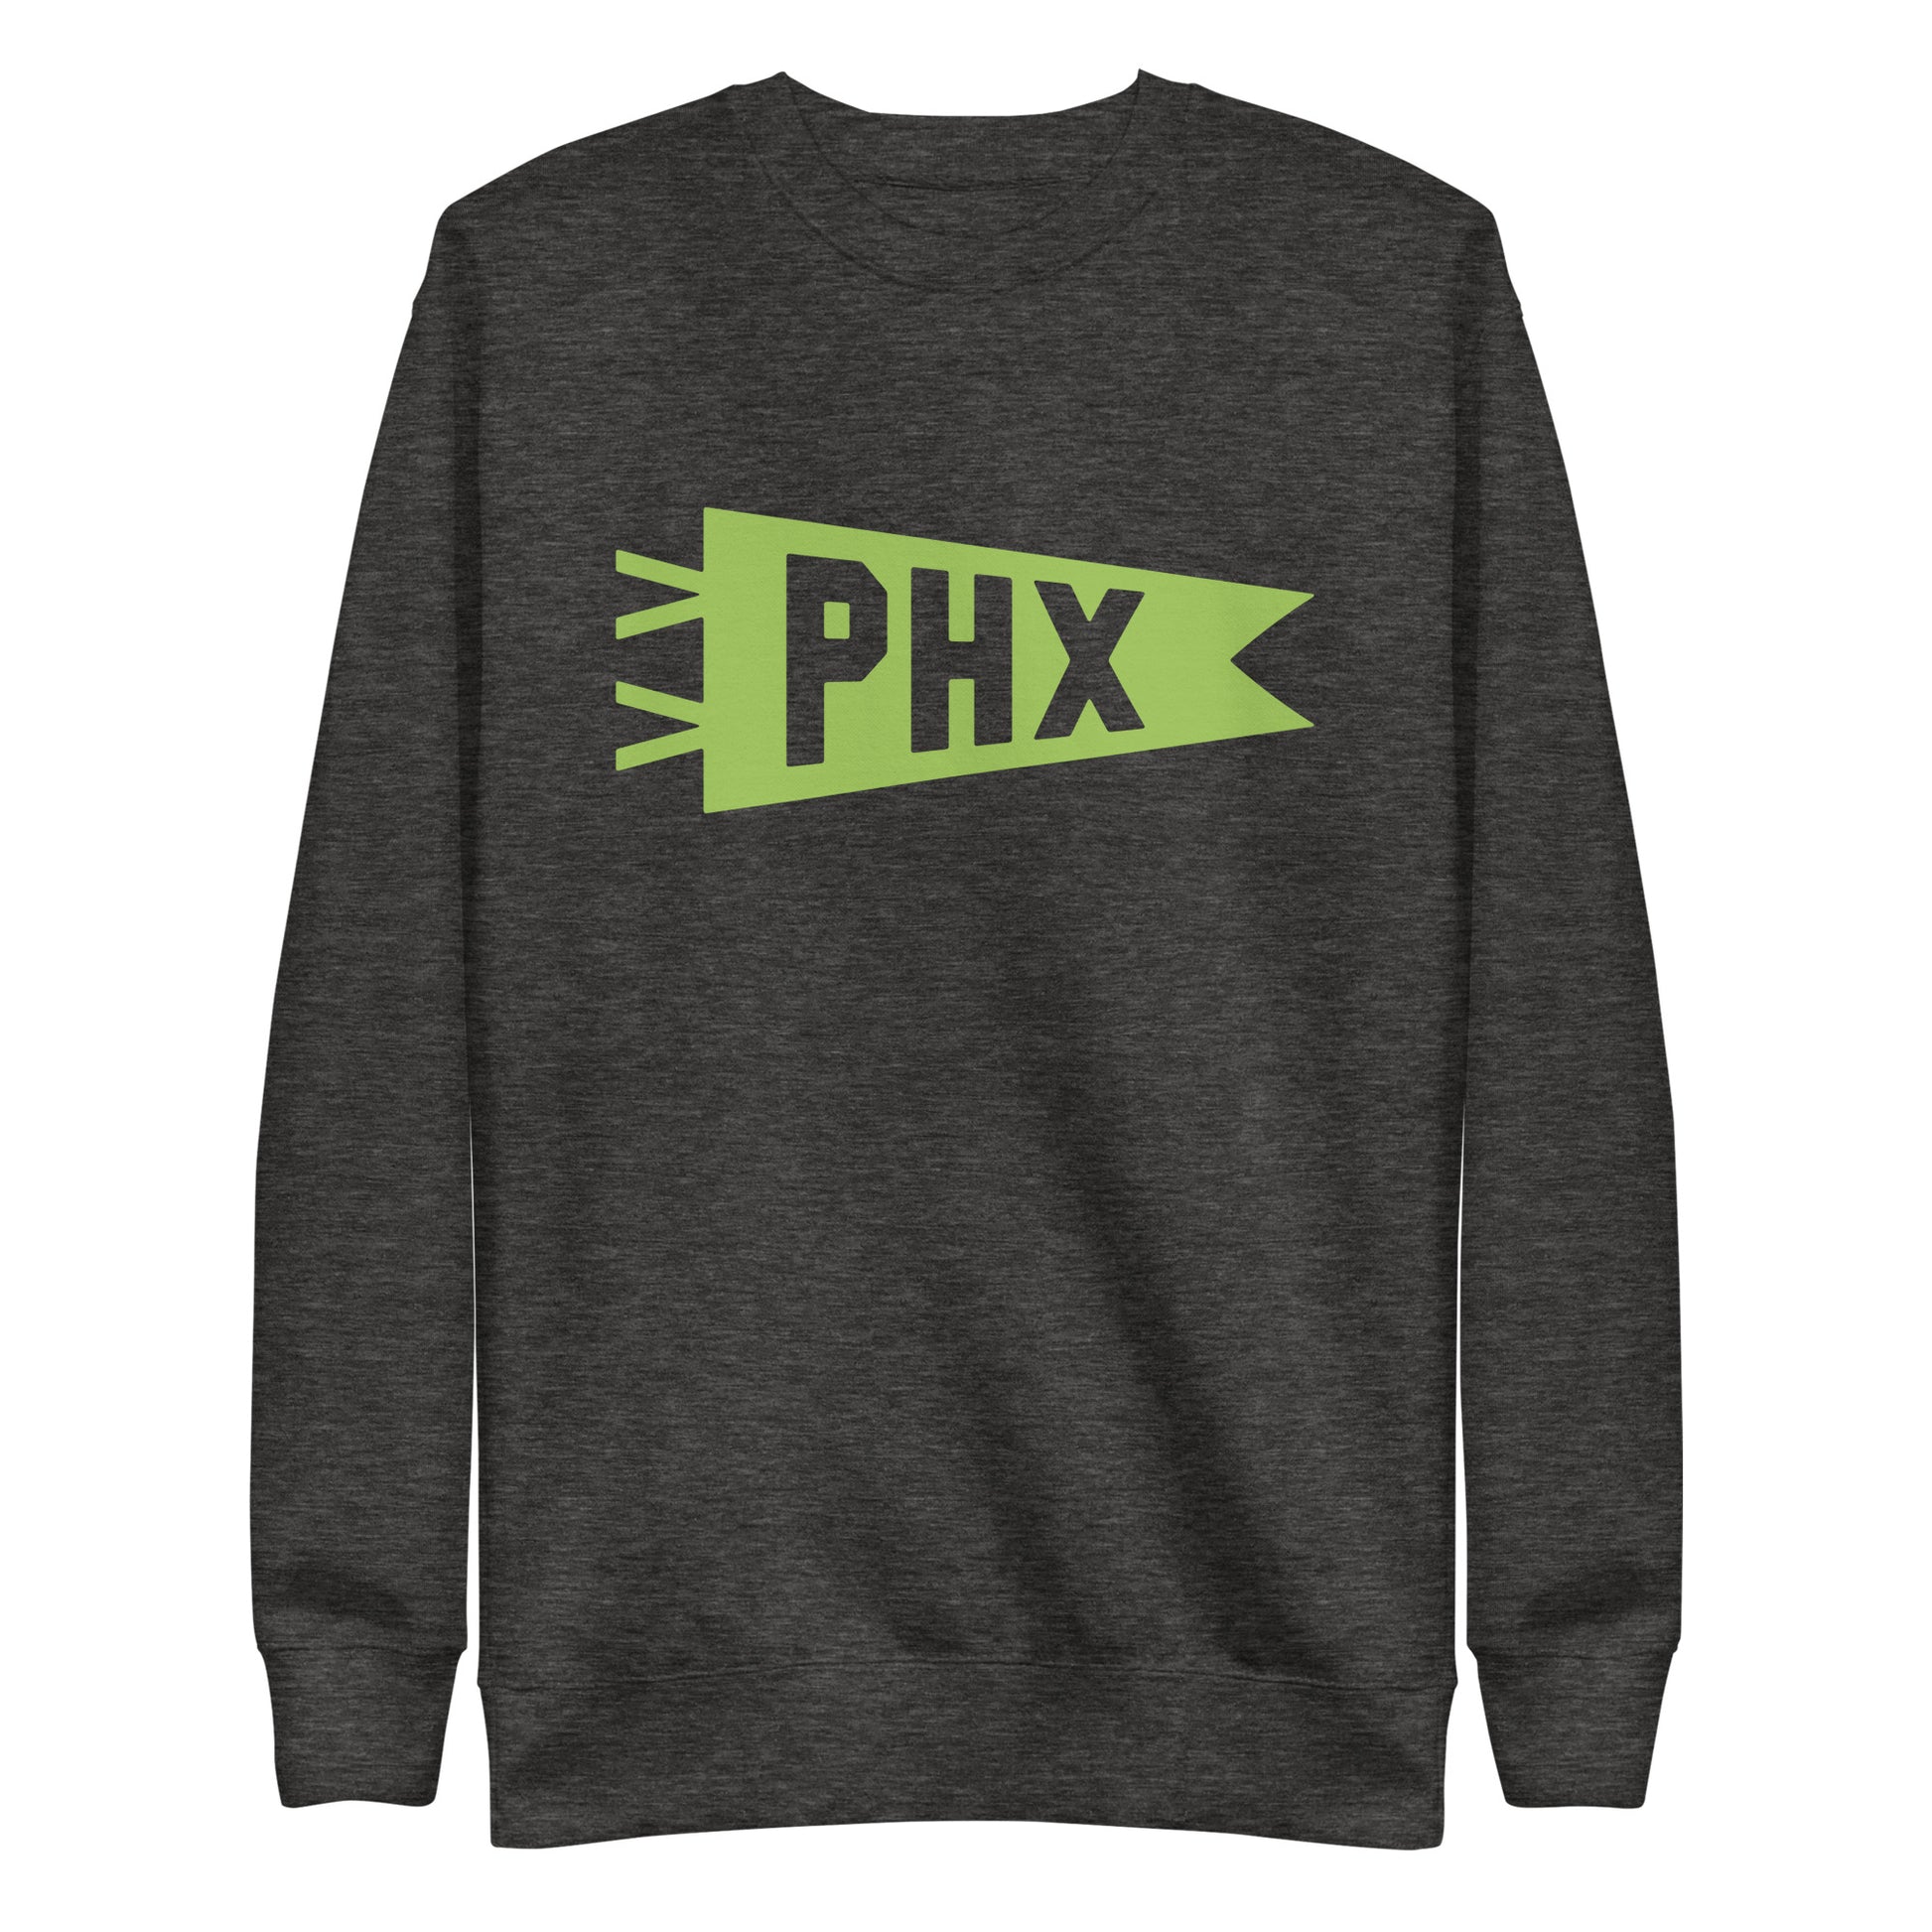 Airport Code Premium Sweatshirt - Green Graphic • PHX Phoenix • YHM Designs - Image 02